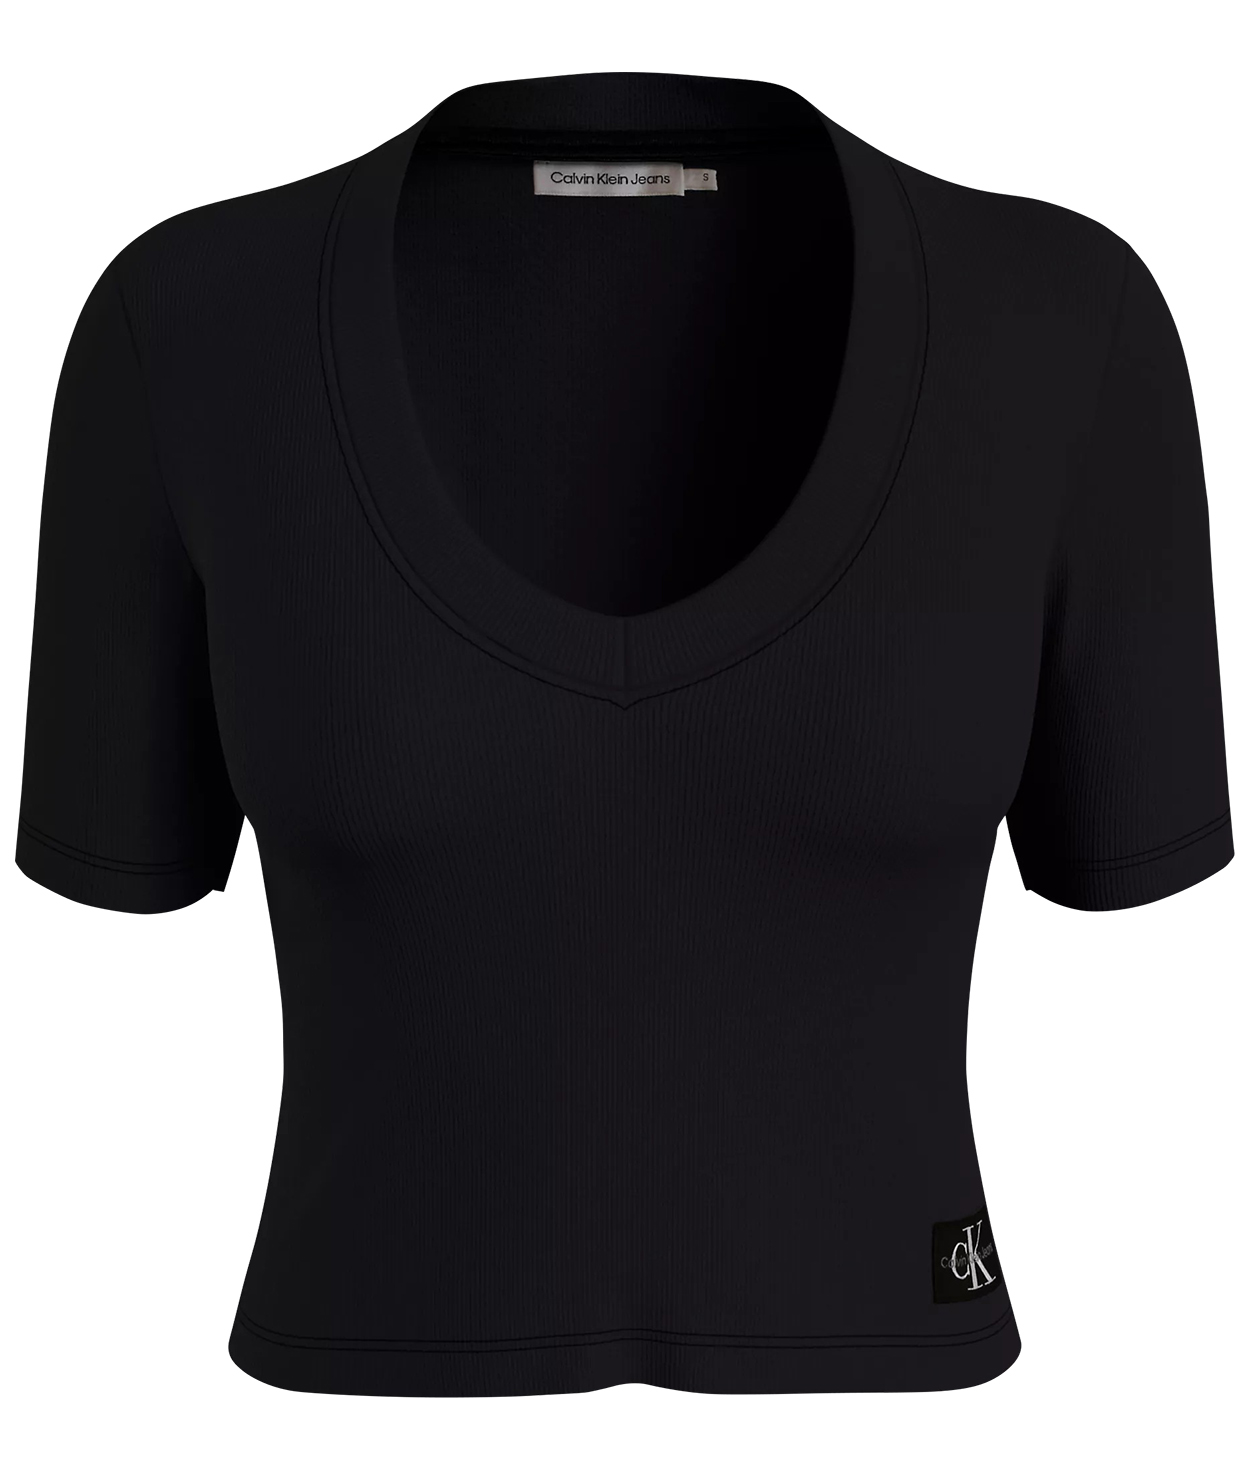 T-shirt FEMME Calvin Klein coton mélangé avec manches courtes et col v noir